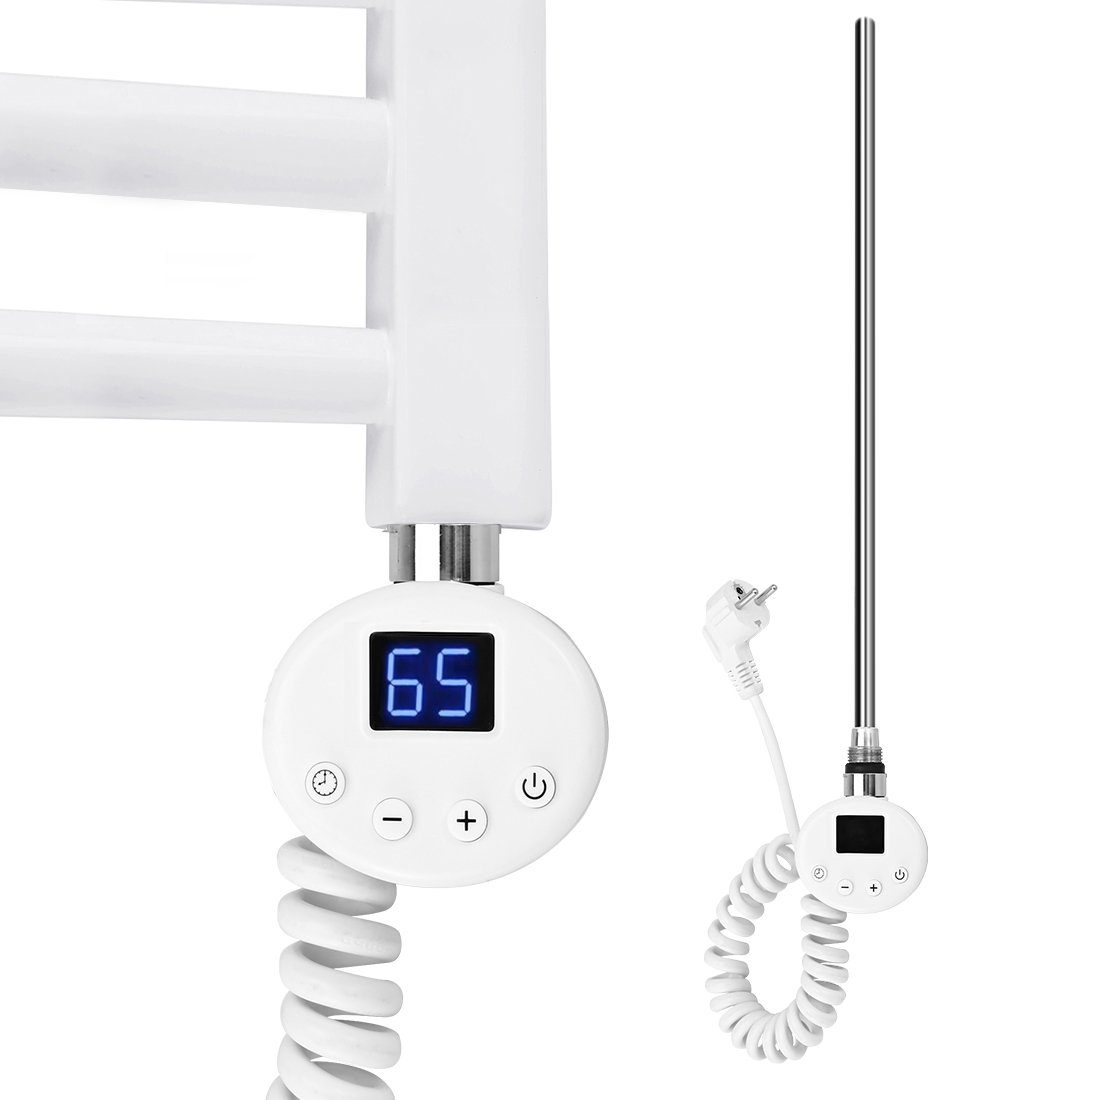 S'AFIELINA Heizstab Thermostat Heizpatrone Weiß für Edelstahl Badheizkörper, mit digitalem